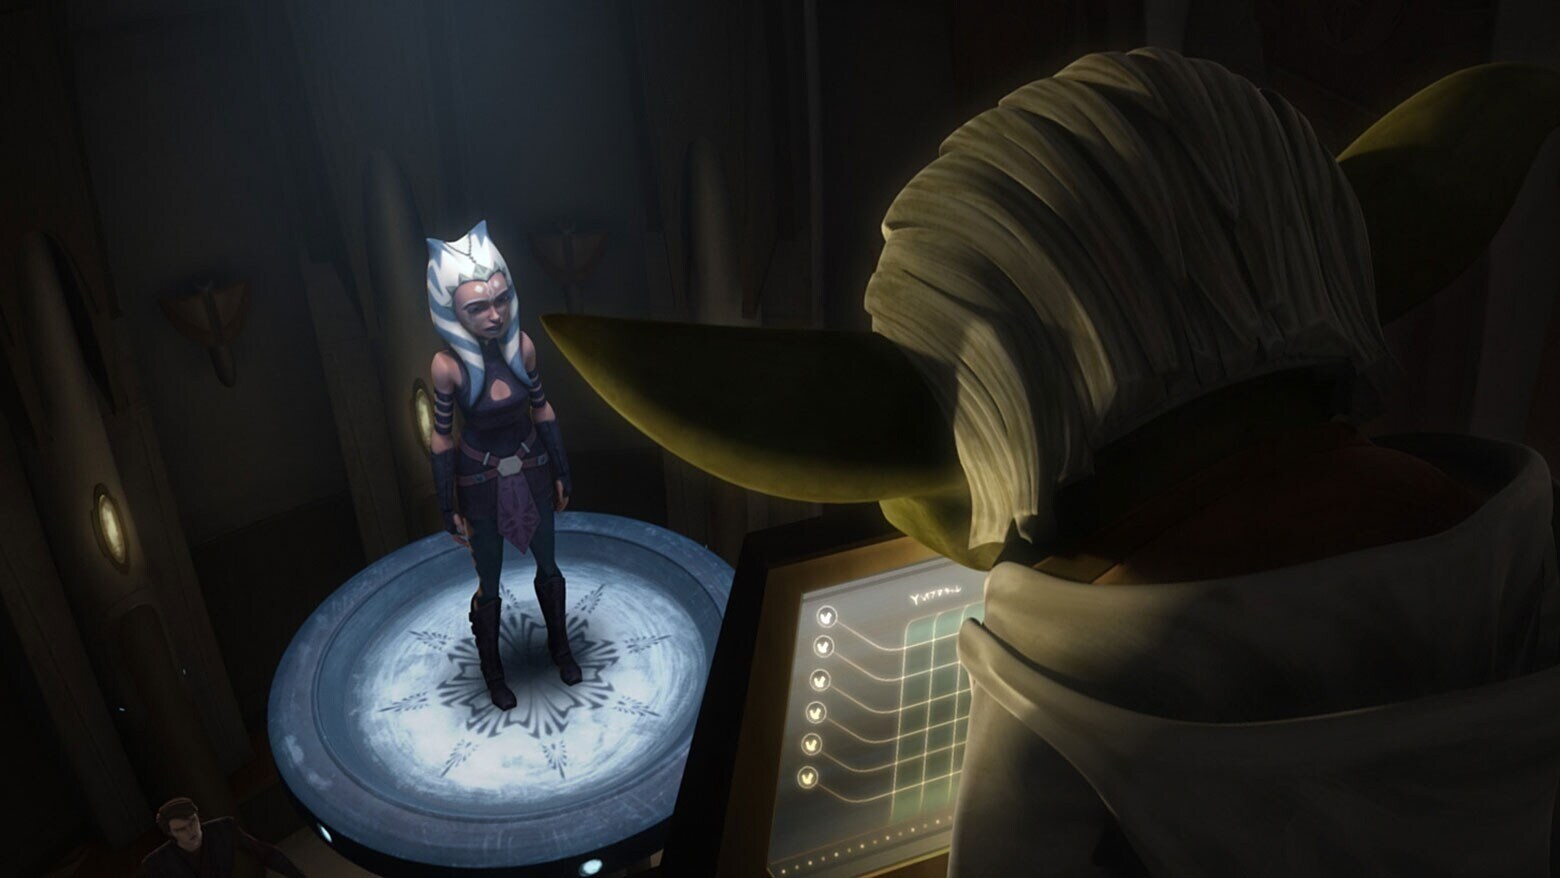 Ahsoka on trial in The Clone Wars